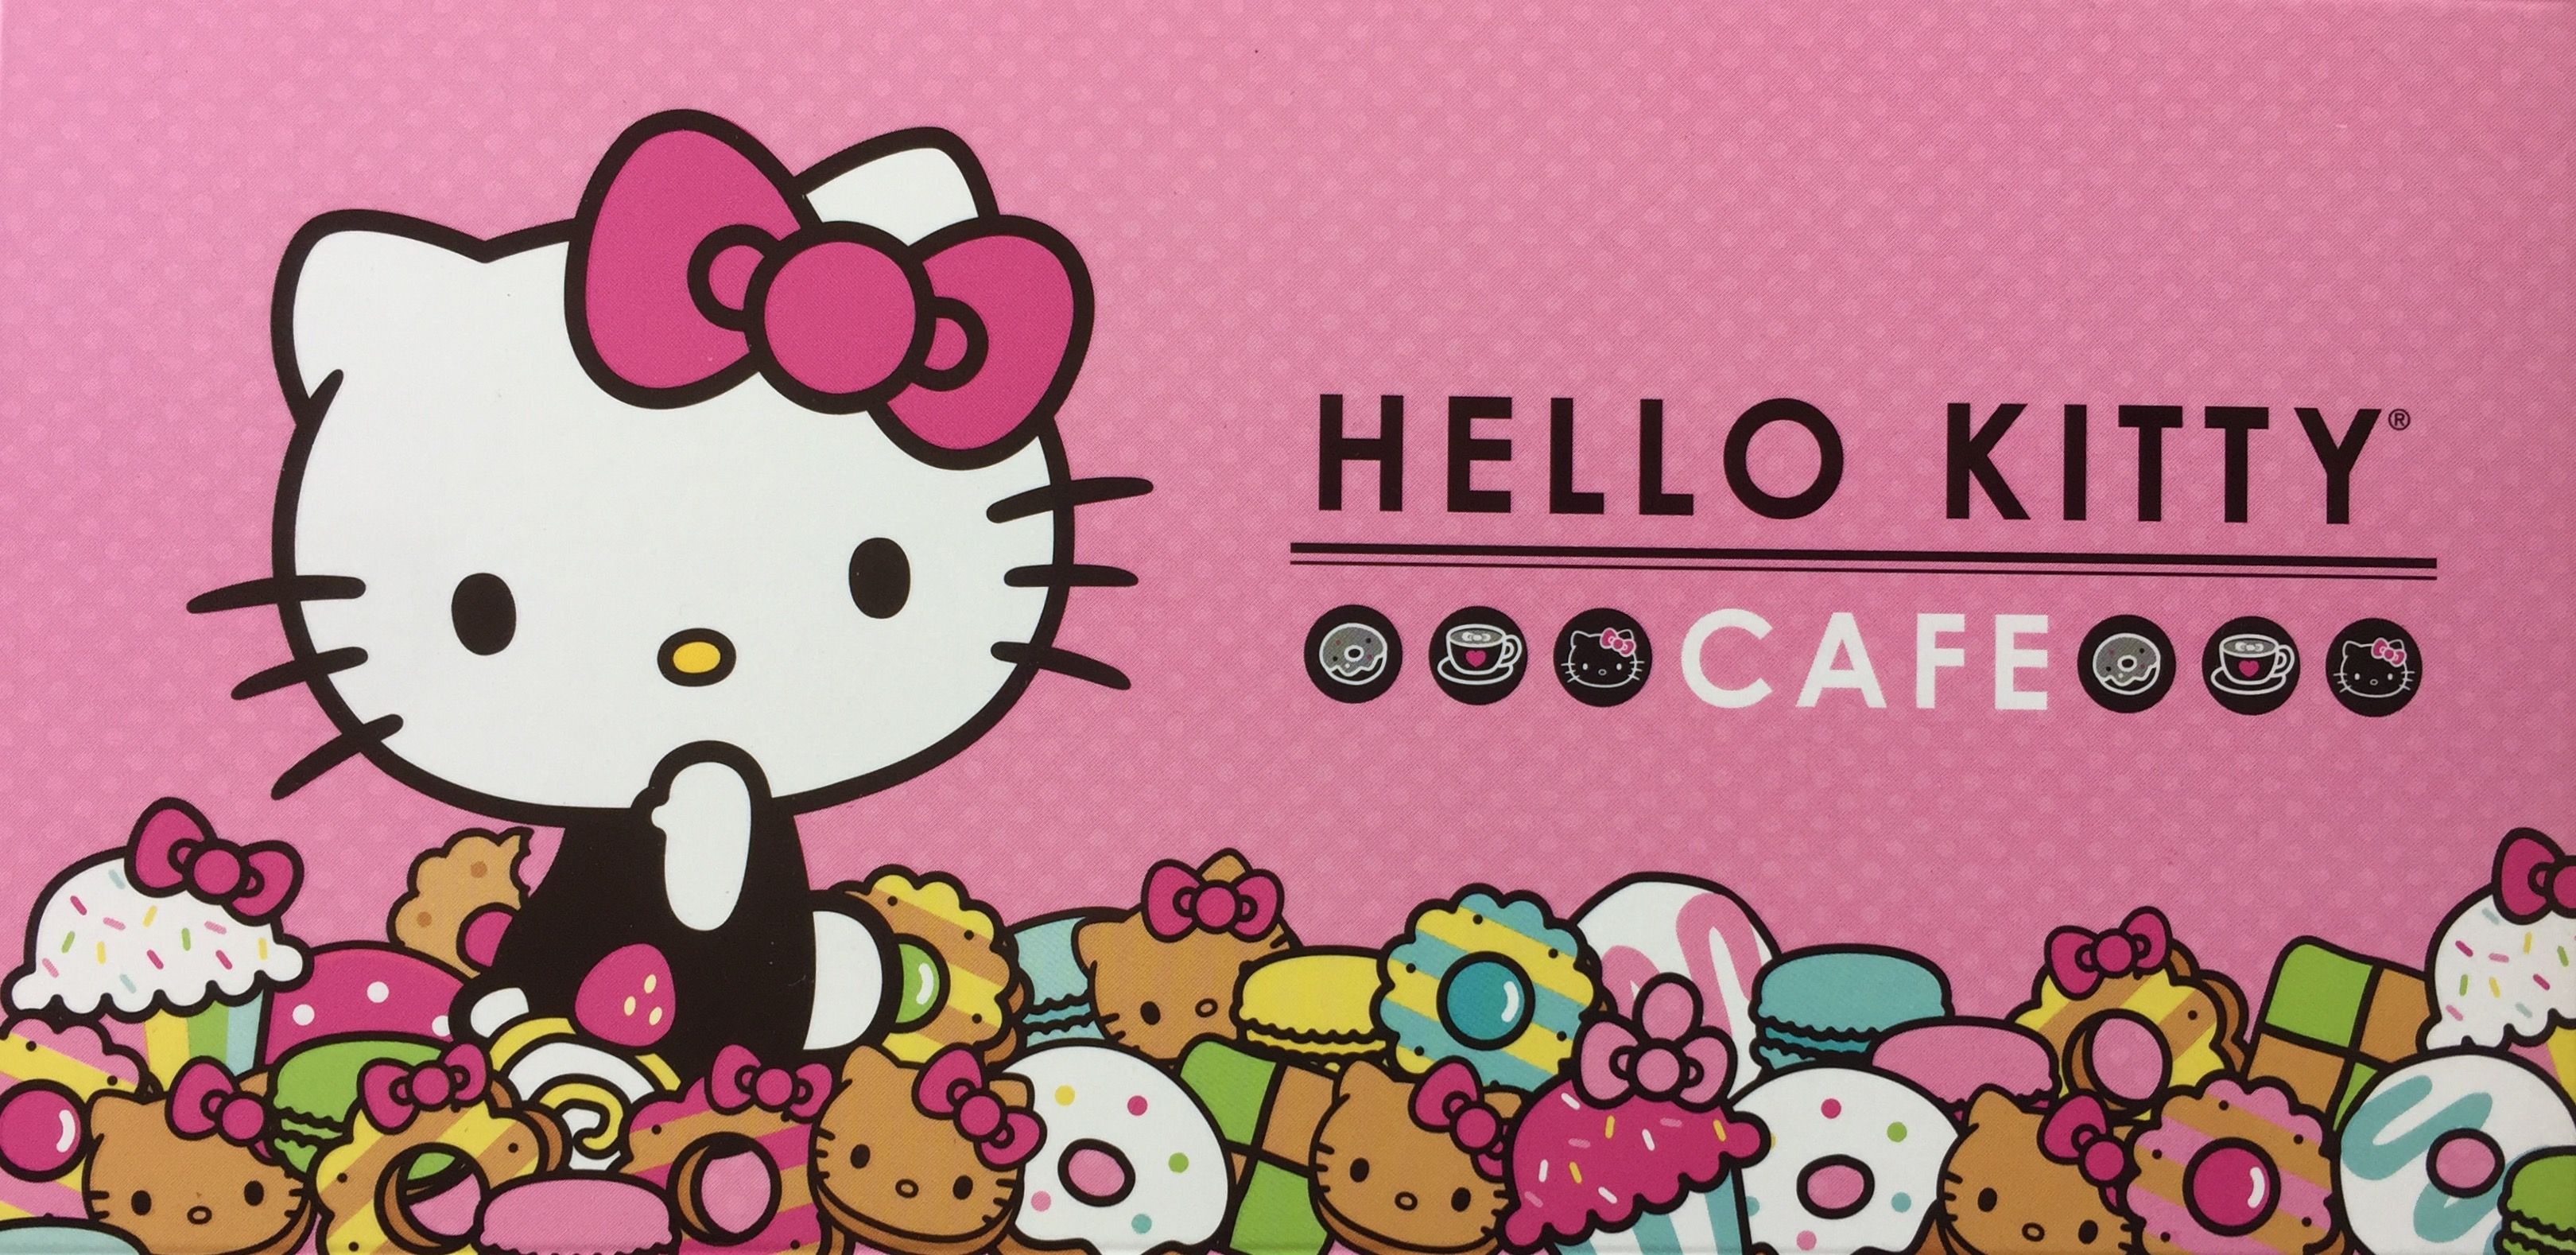 Hello Kitty cafe pop up. Papel pintado de hello kitty, Impresion en tazas, Tazas